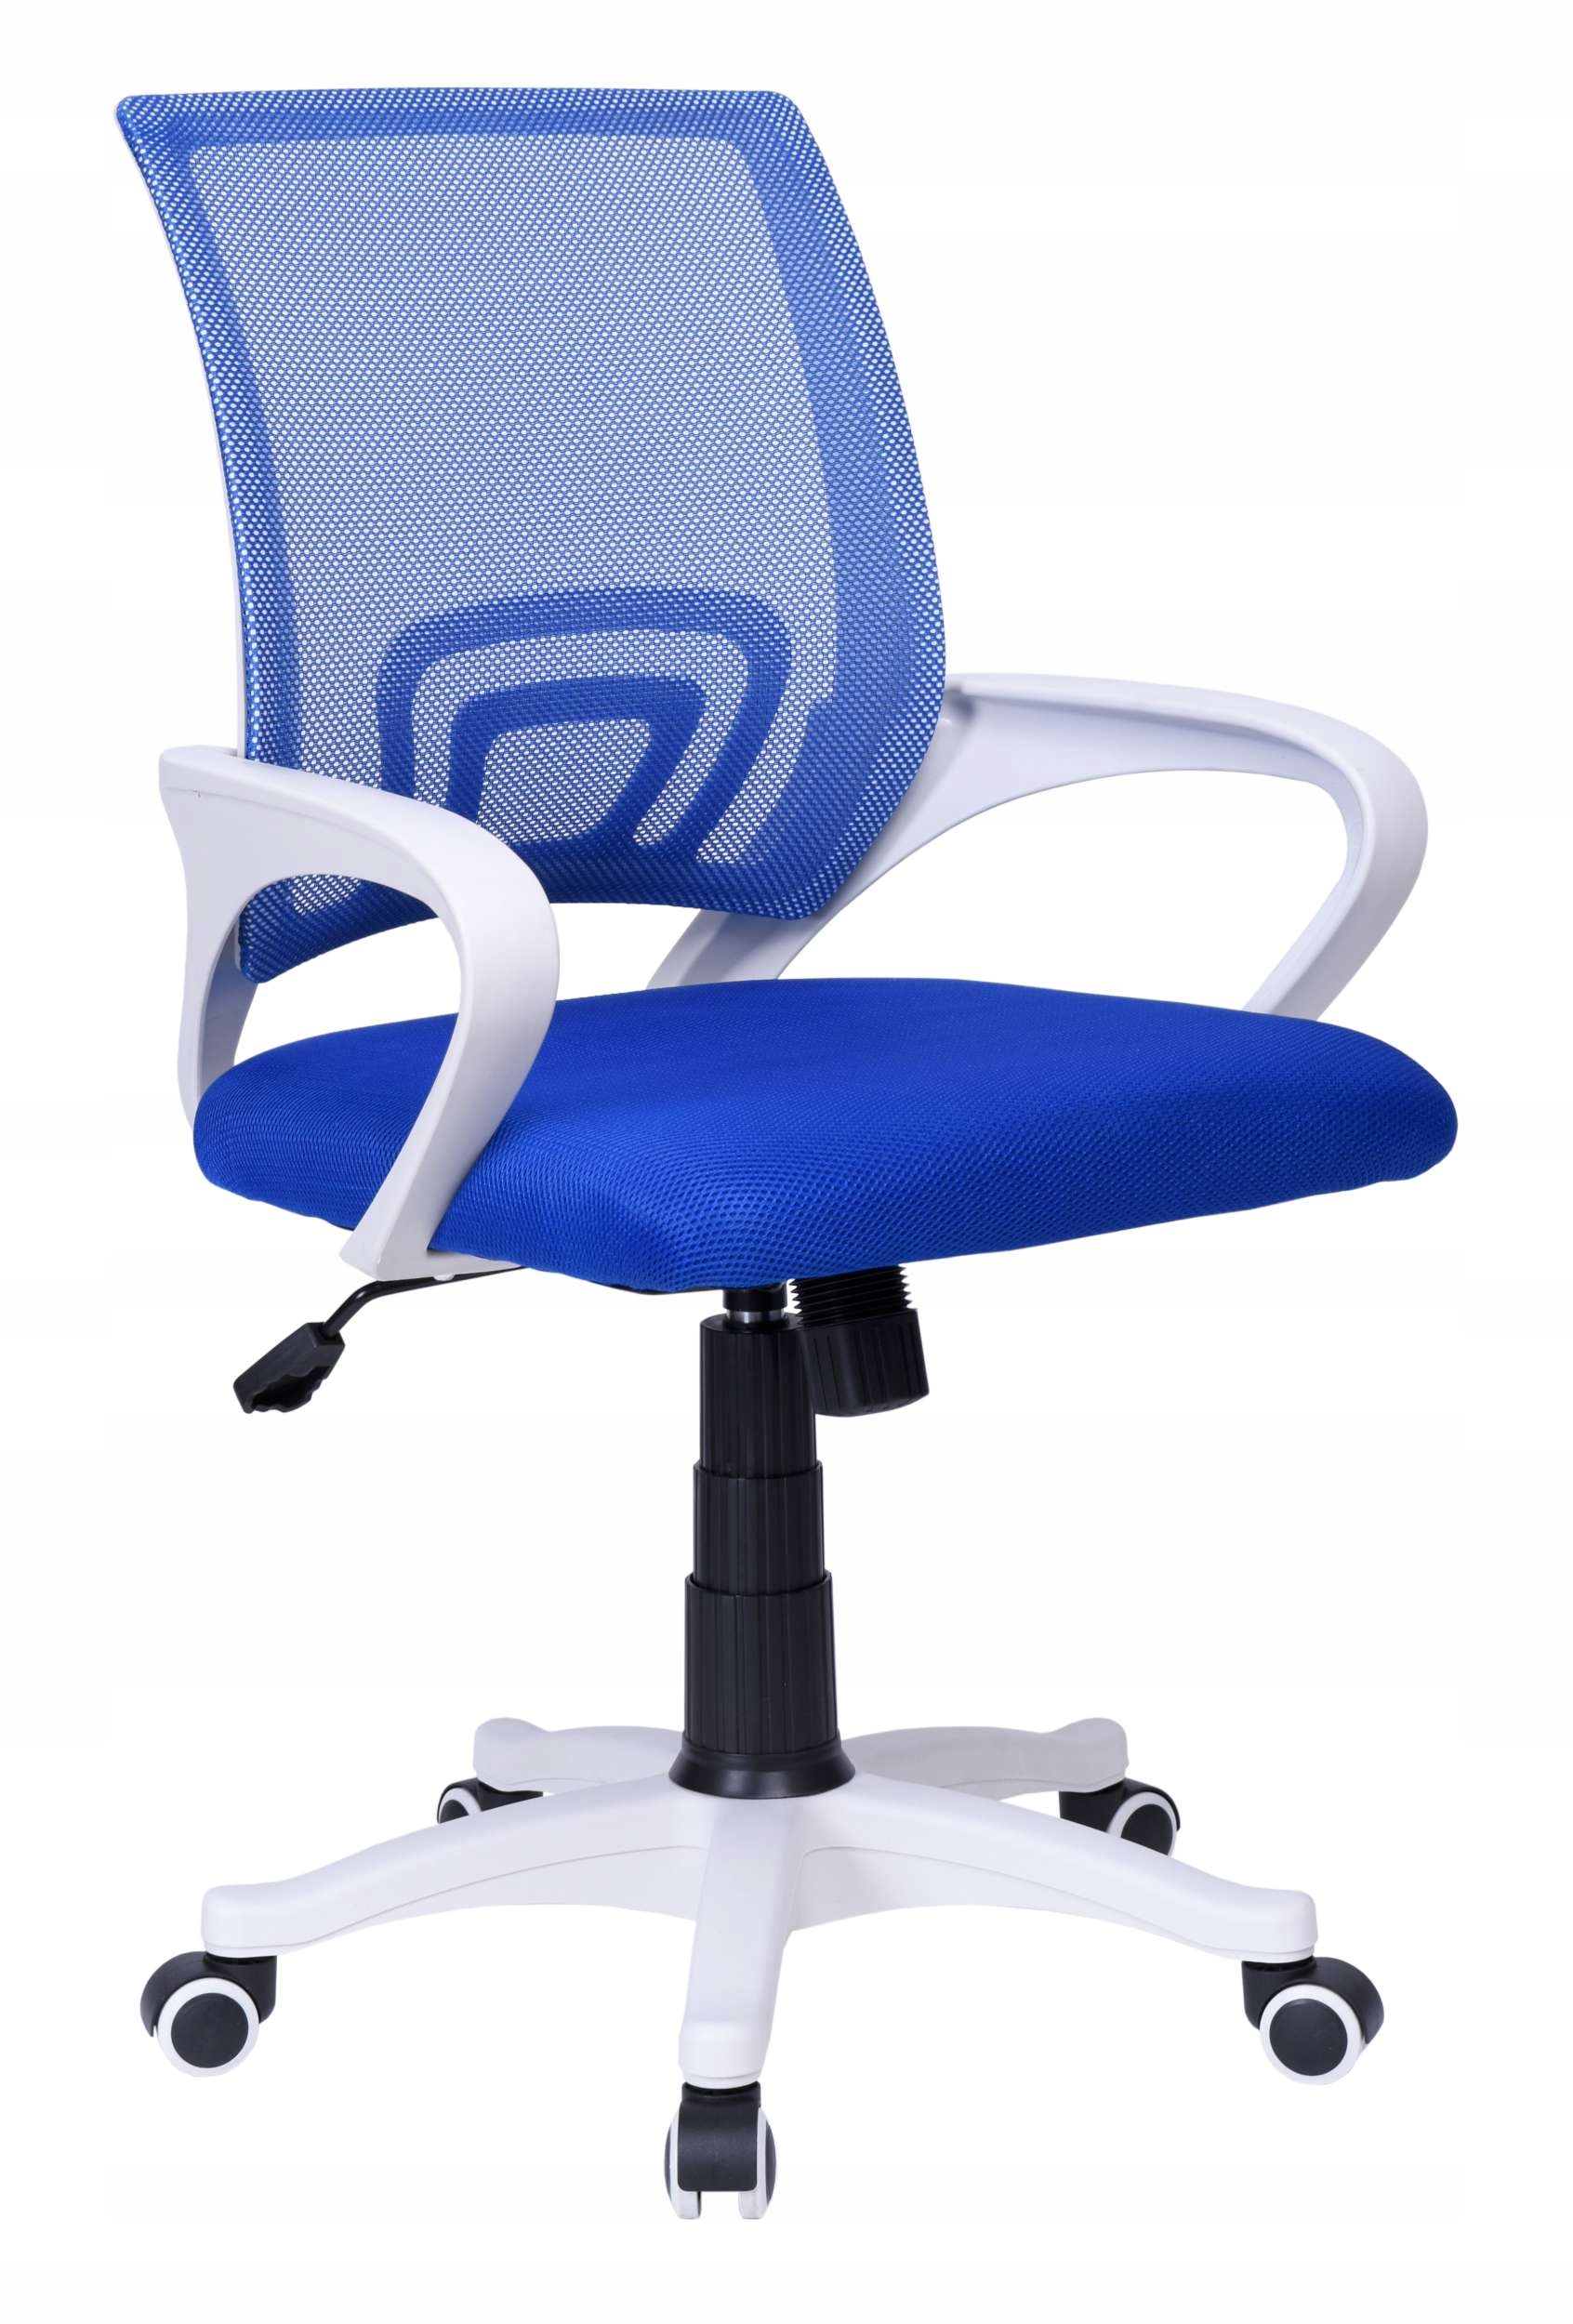 Fotel Obrotowy Biurowy Krzeslo Biurowe Obrotowe 8244926101 Allegro Pl